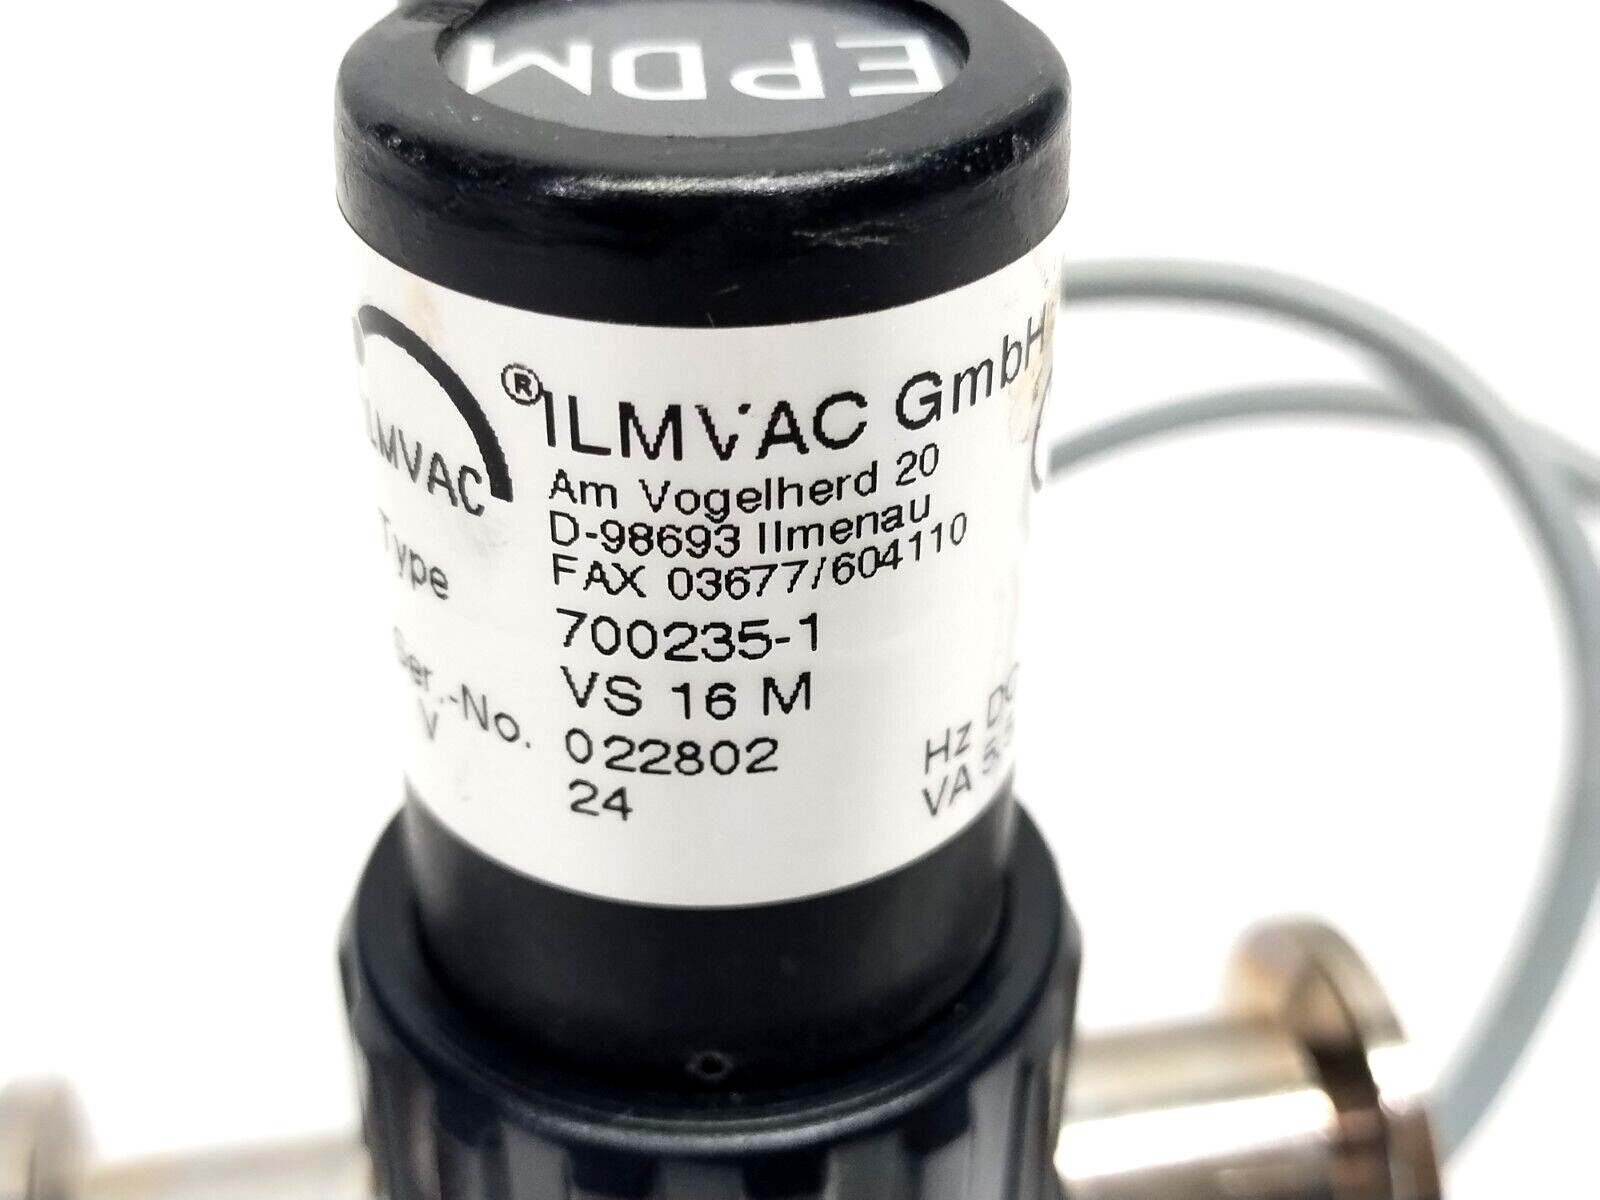 ILMVAC 700235-1 EPDM Vacuum Through Valve VS 16 M 24VDC 5.5VA DN4 G 1/4